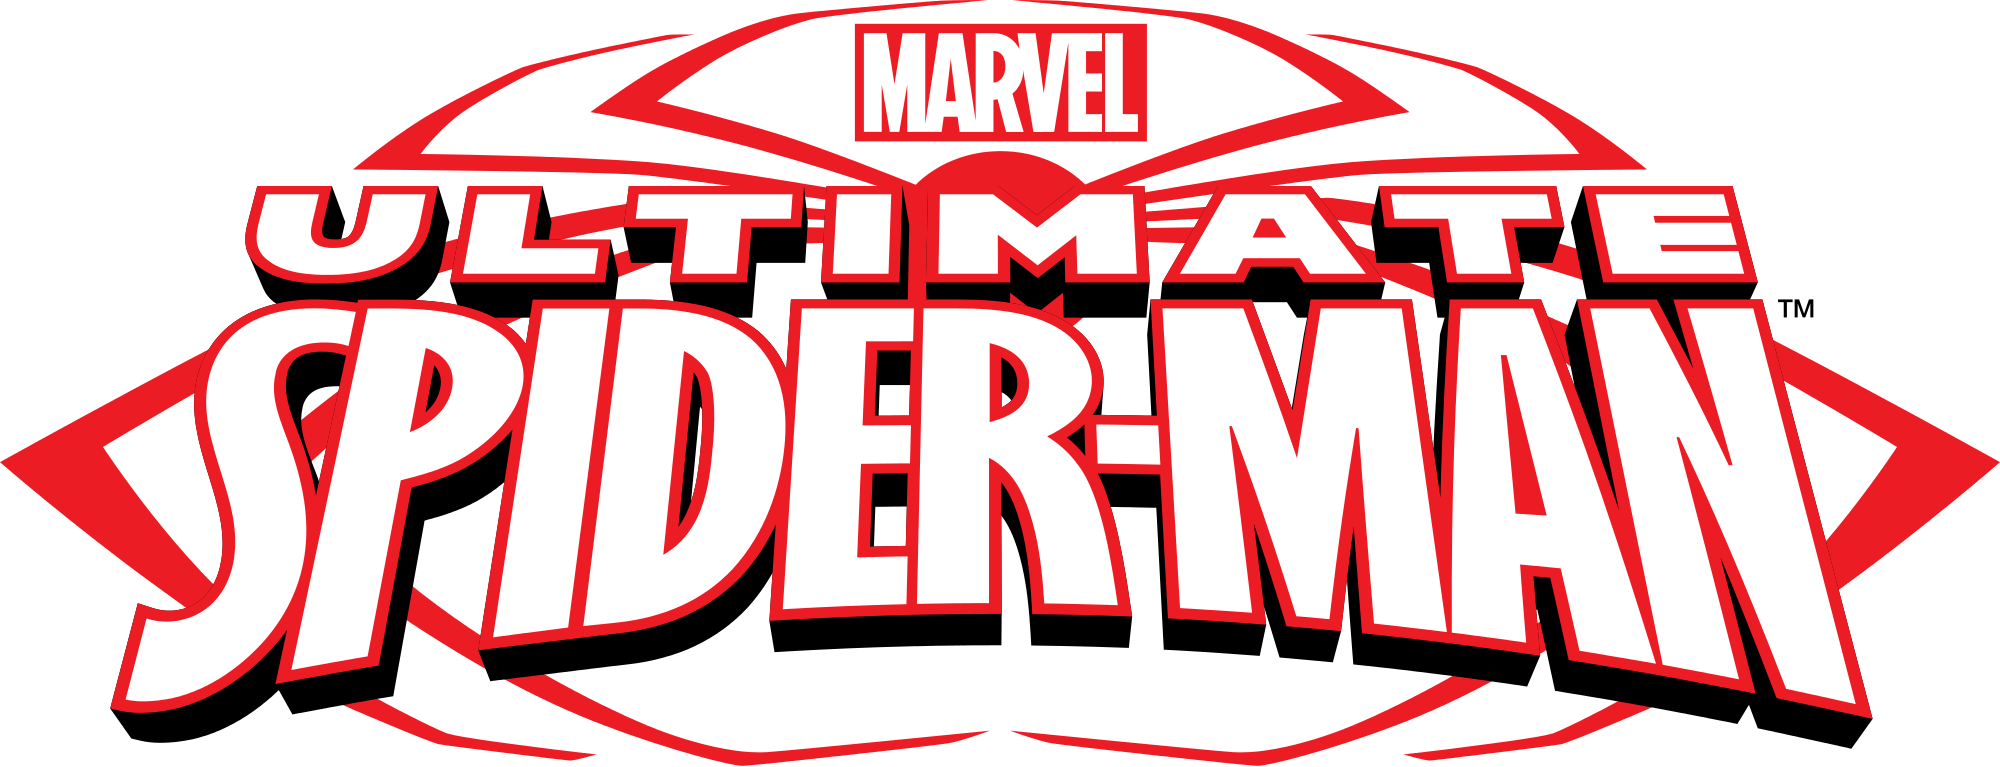 Image - Ultimate Spider-Man (TV series) logo.svg.png | Disney Wiki ...